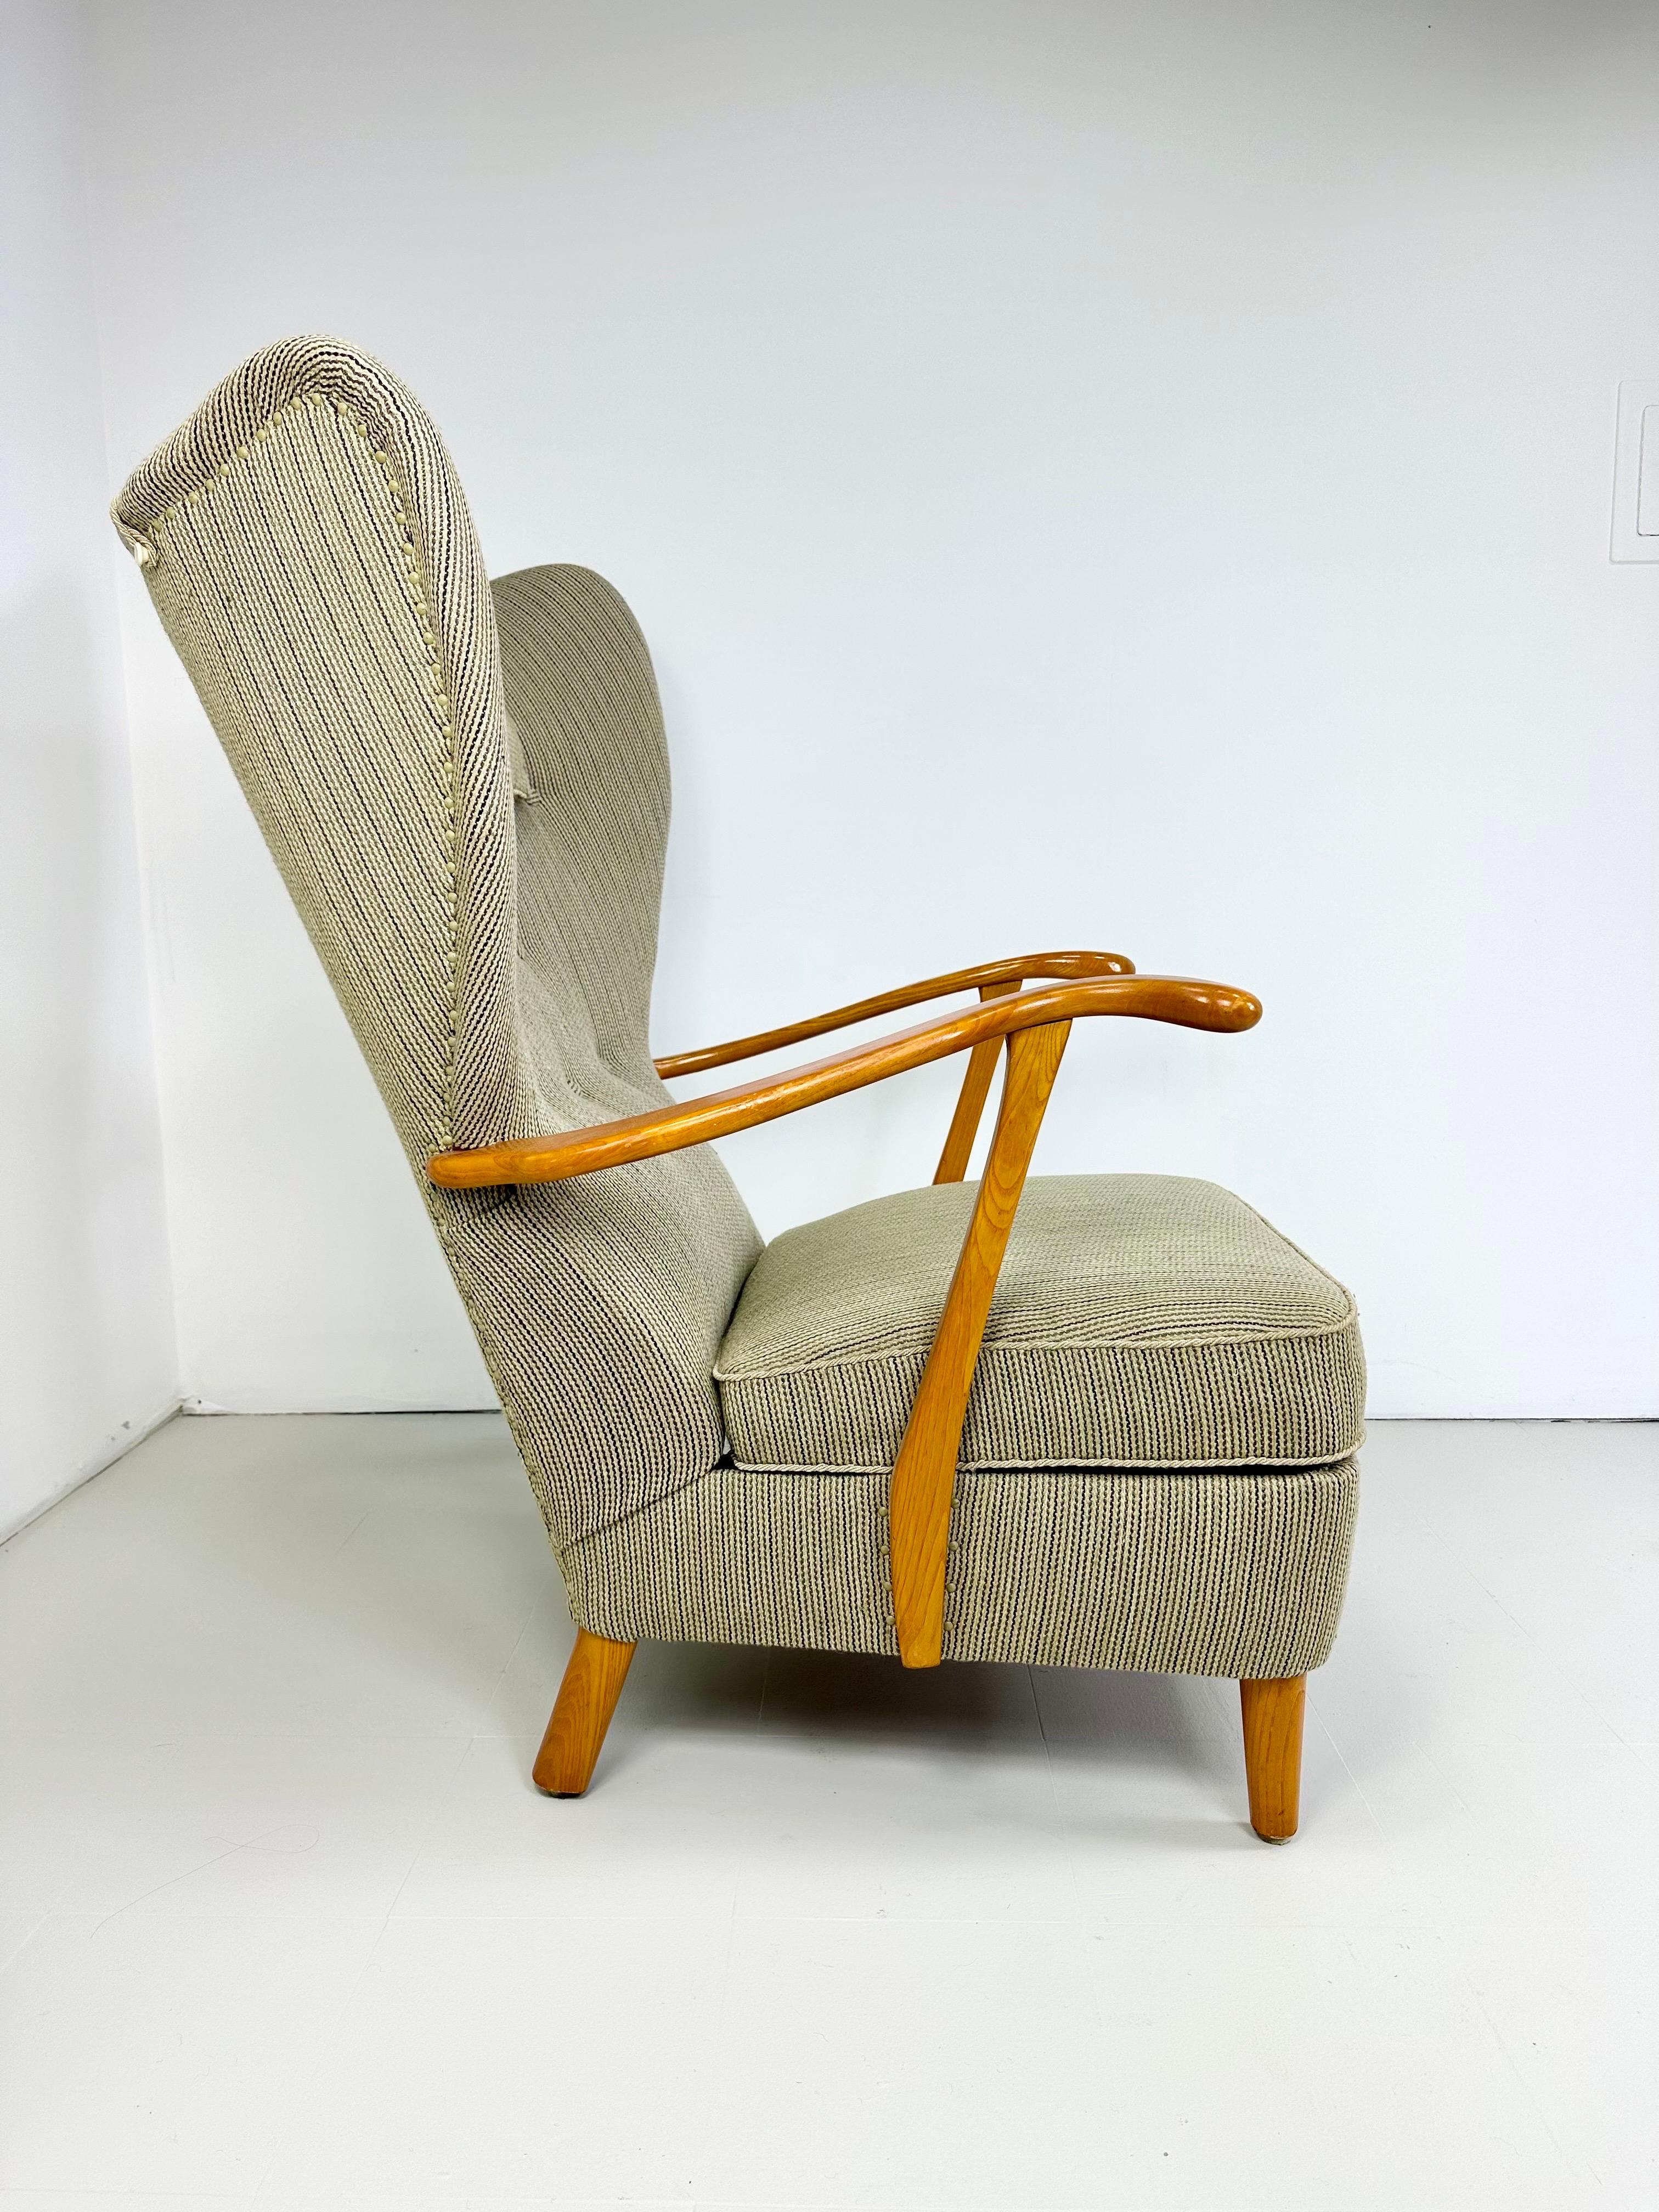 Schwedischer Hochlehner-Sessel aus den 1950er Jahren. Die Armlehnen sind aus Buchenholz geschnitzt und haben einfache, elegante Linien. Neuere Polsterung mit unterer Rückenlehne und beschwerter Kopfstütze

Lieferung in den Großraum NYC möglich.